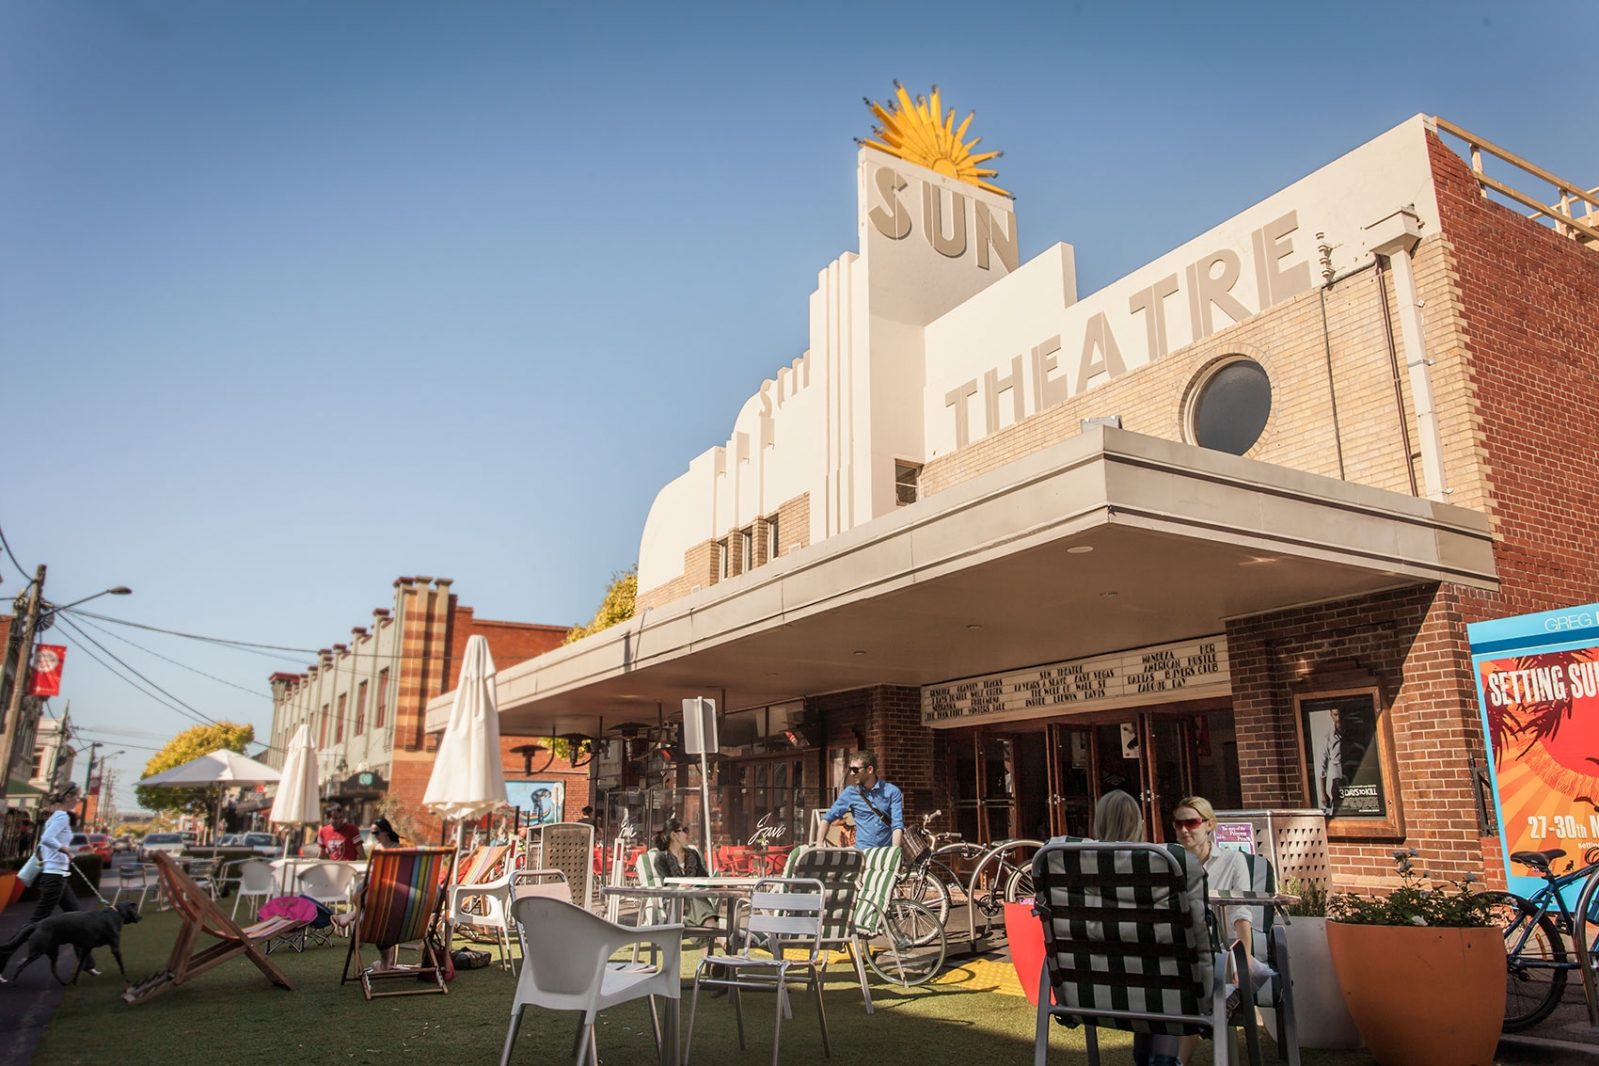 sun-theatre-yarraville-large.jpg